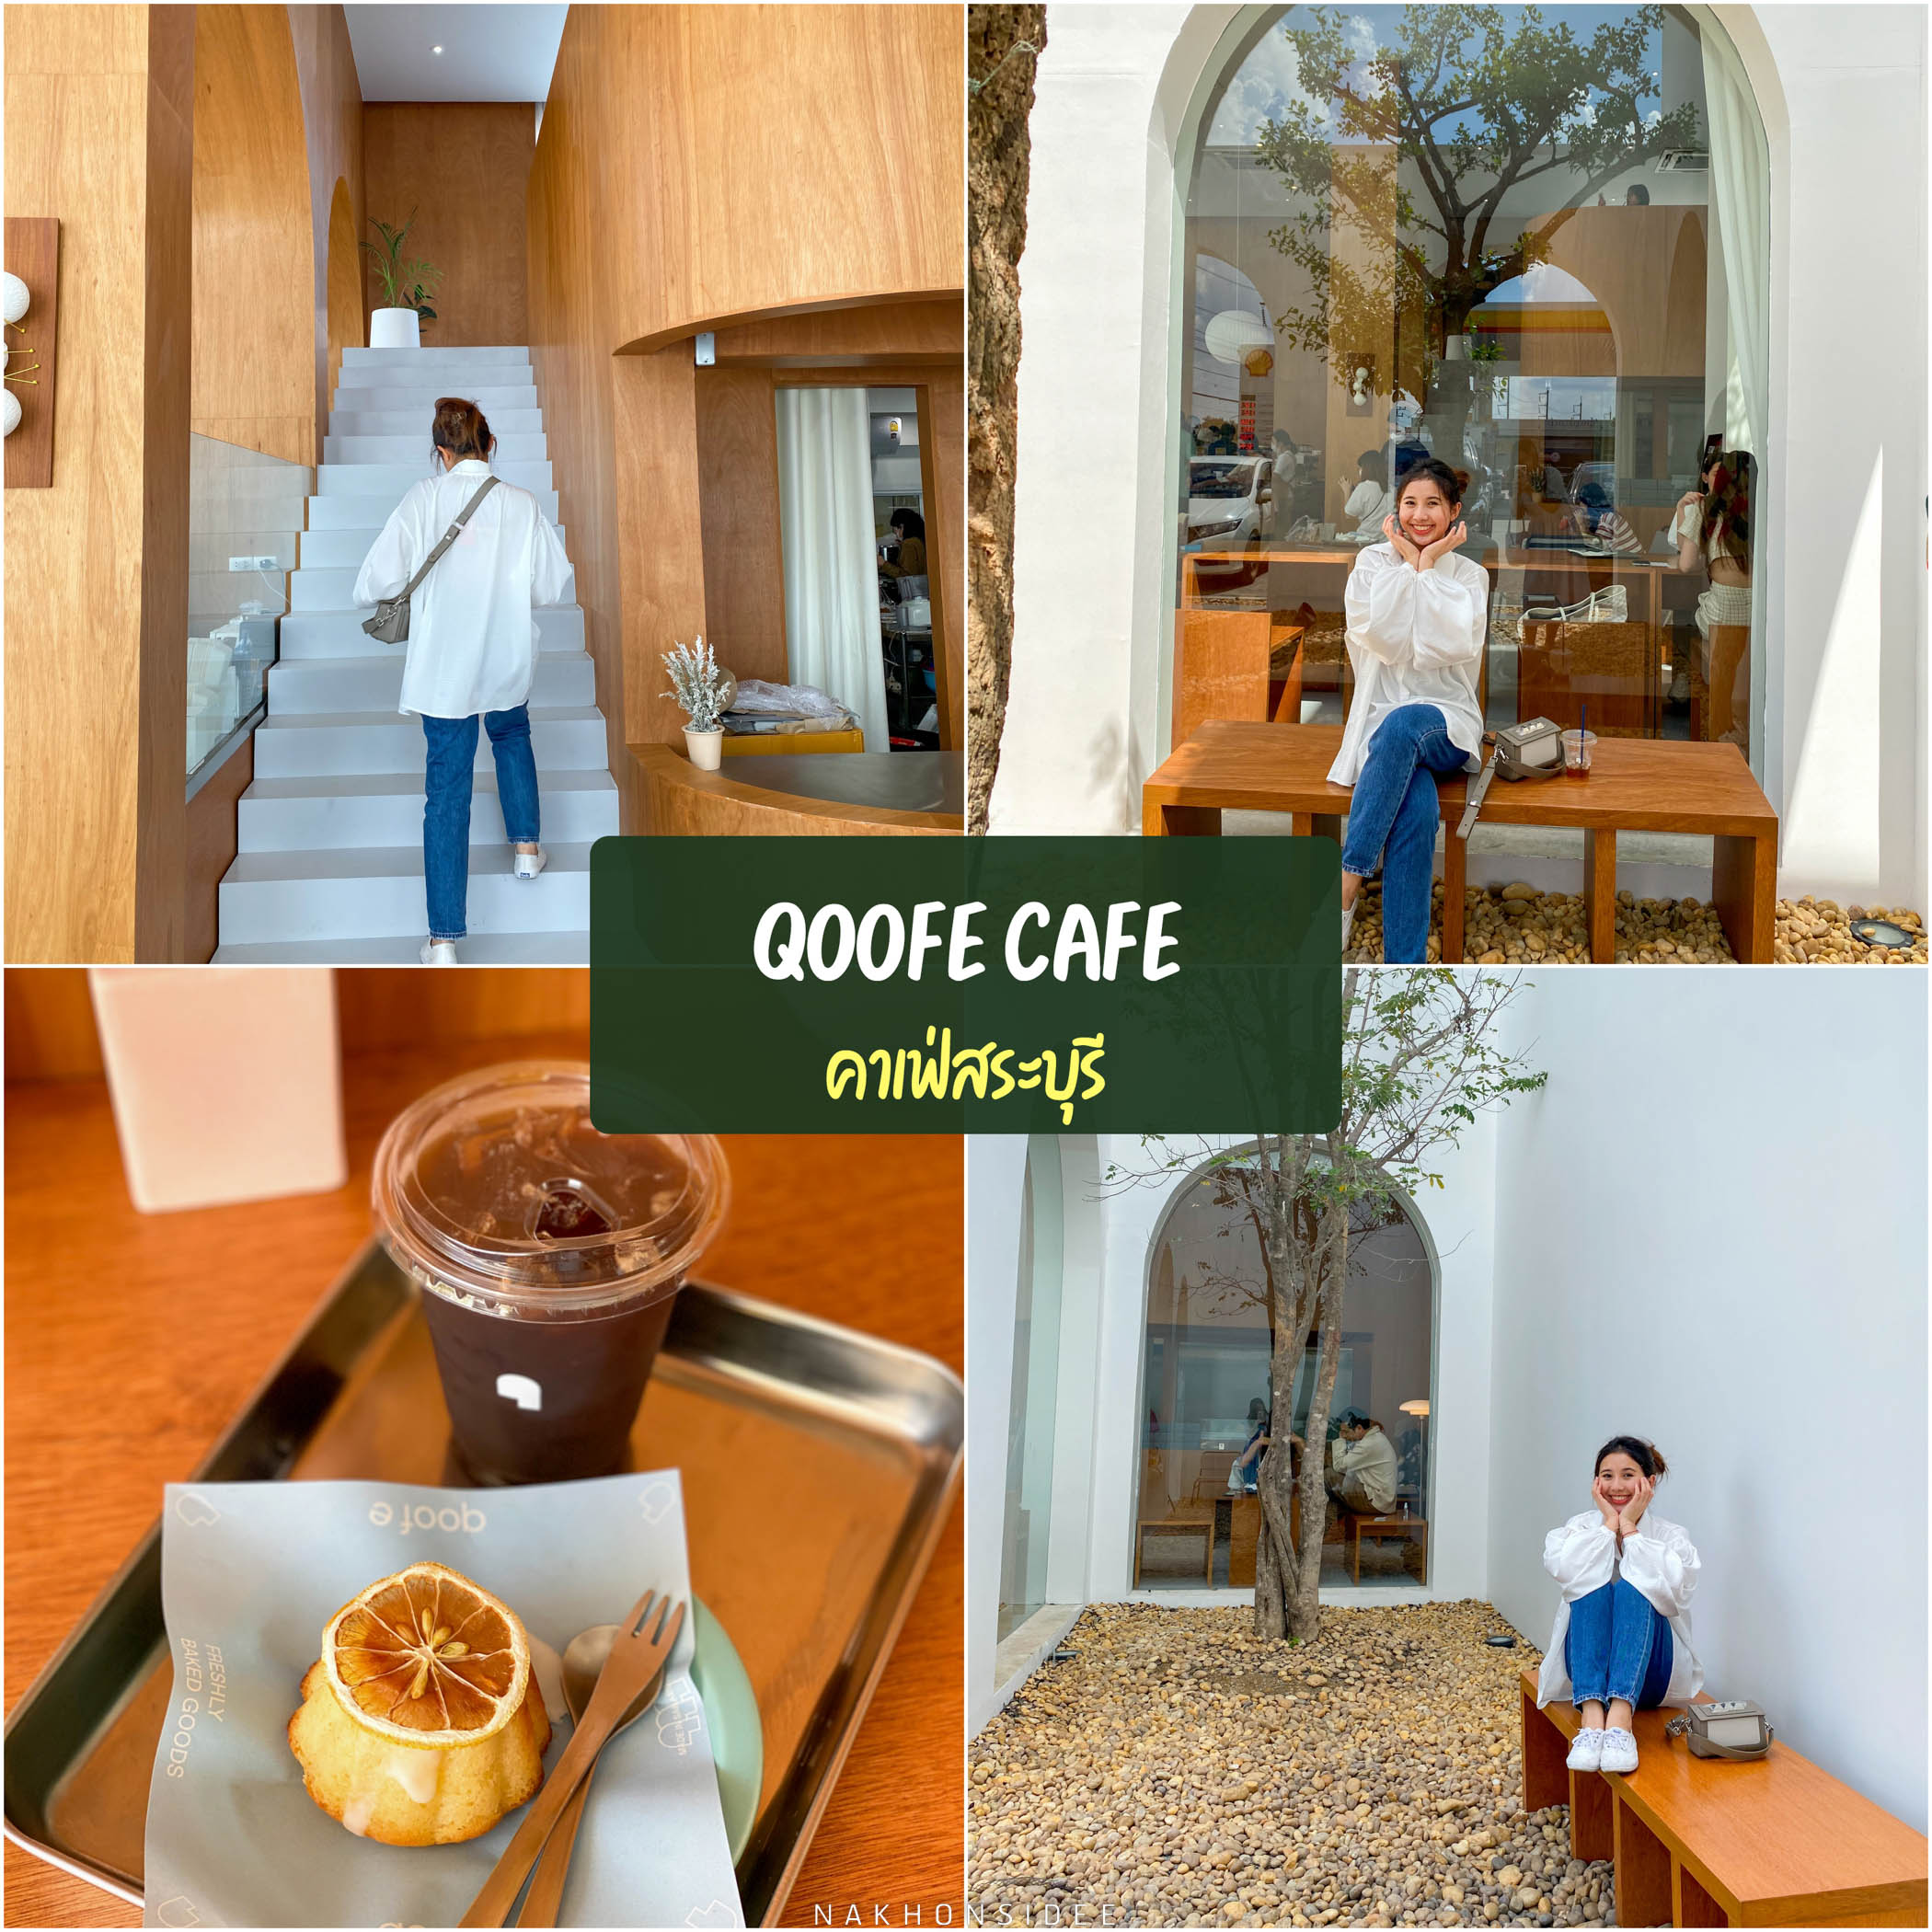 Qoofe cafe คาเฟ่สระบุรี ร้านนี้เค้าการันตีทั้งความสวยของร้าน มุมถ่ายรูปวิถีเน็ตไอดอล เครื่องดื่มและเบเกอรี่ที่สุดจะอร่อย